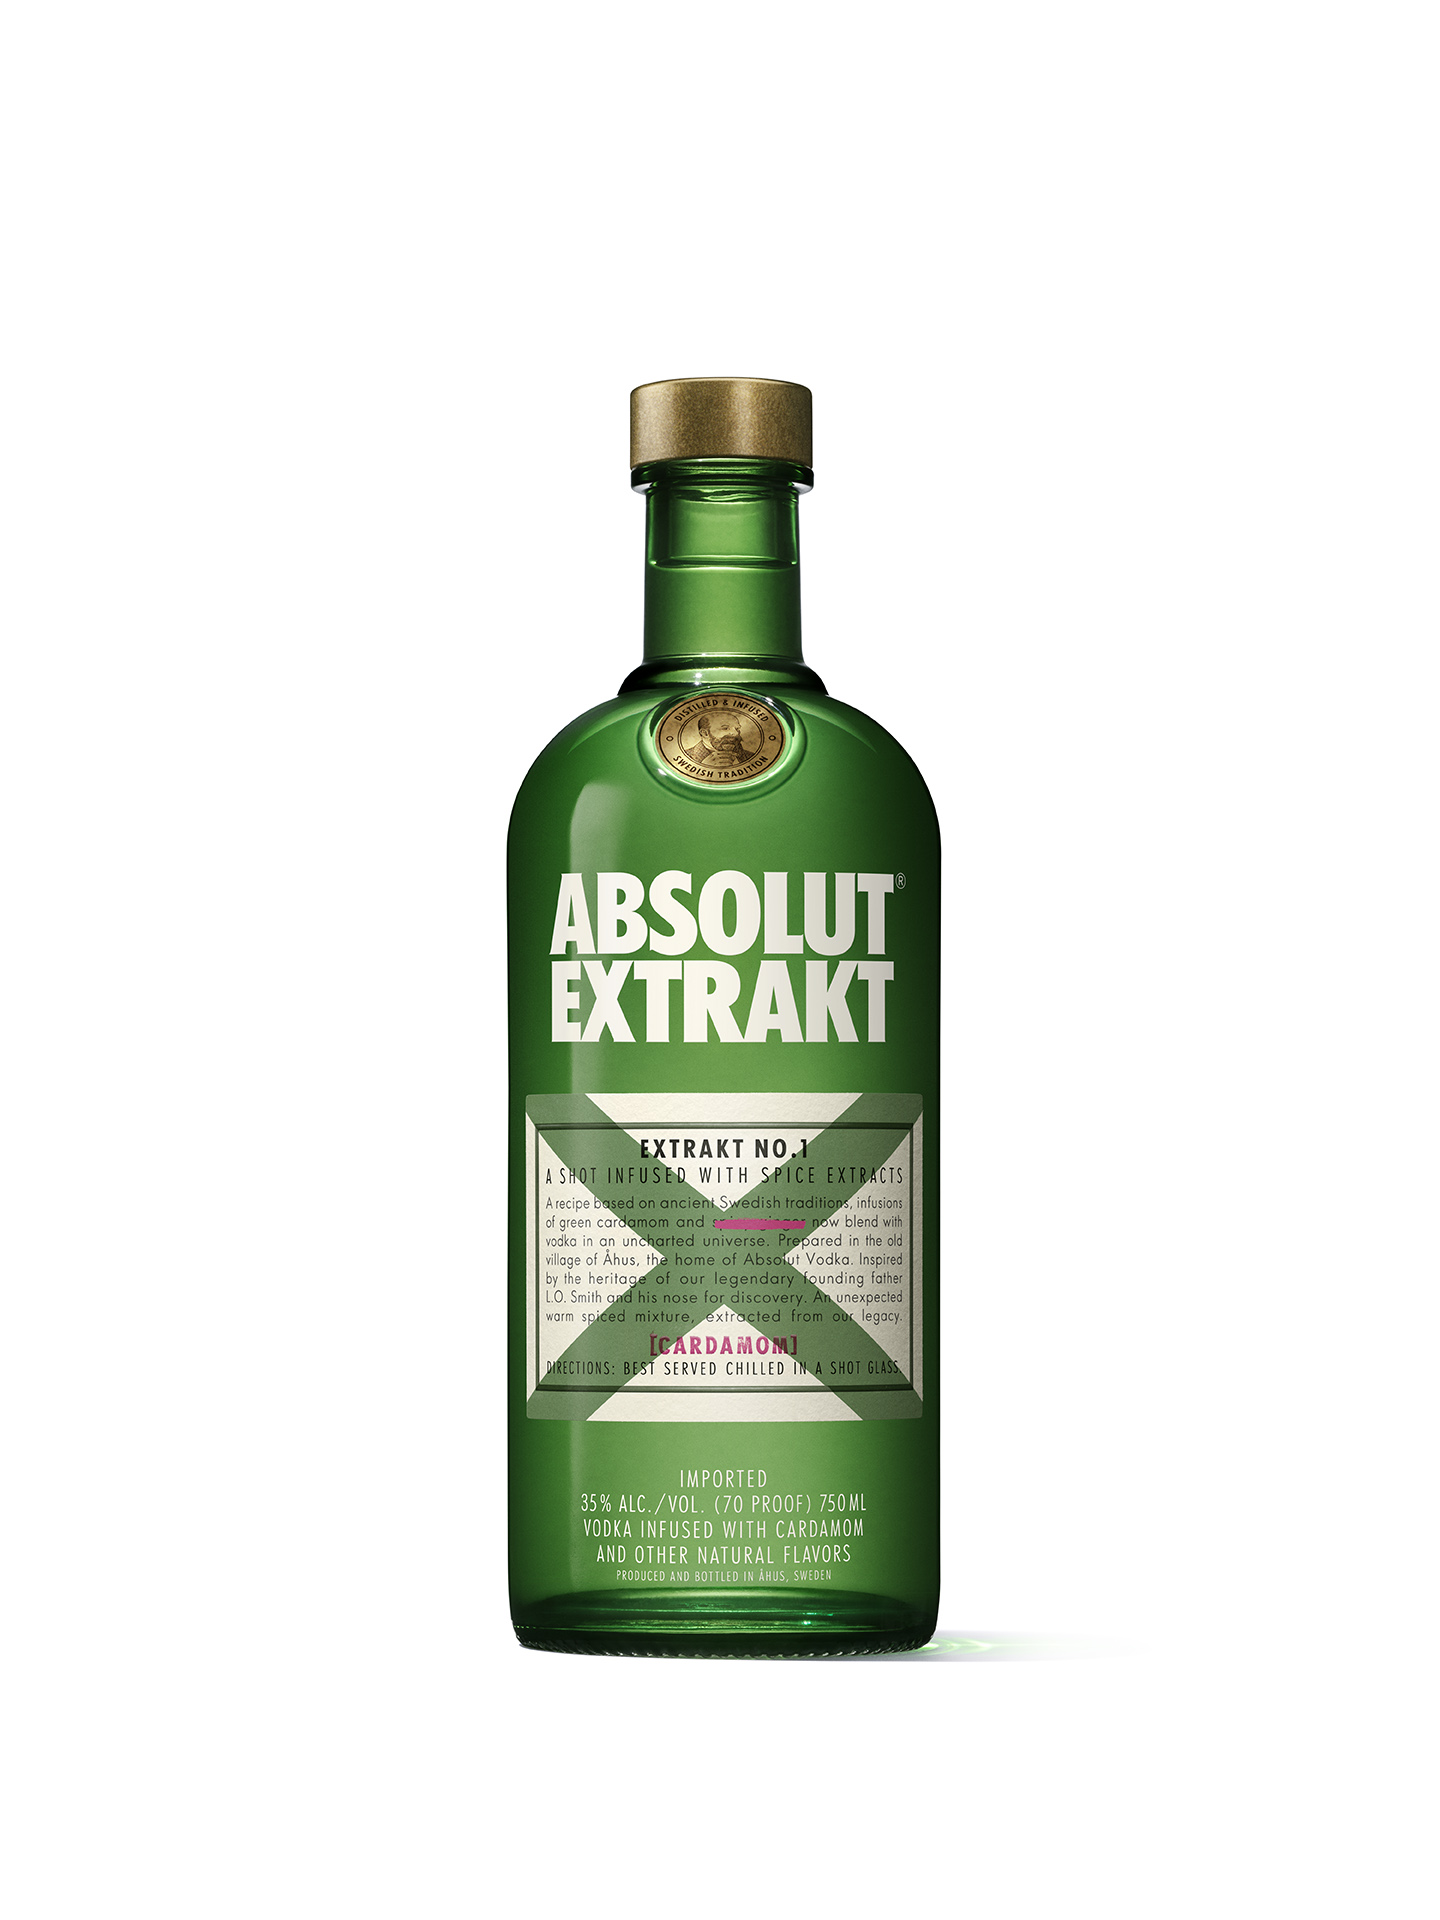 Absolut Extrakt: nova vodka da marca com lançamento no Lollapalooza